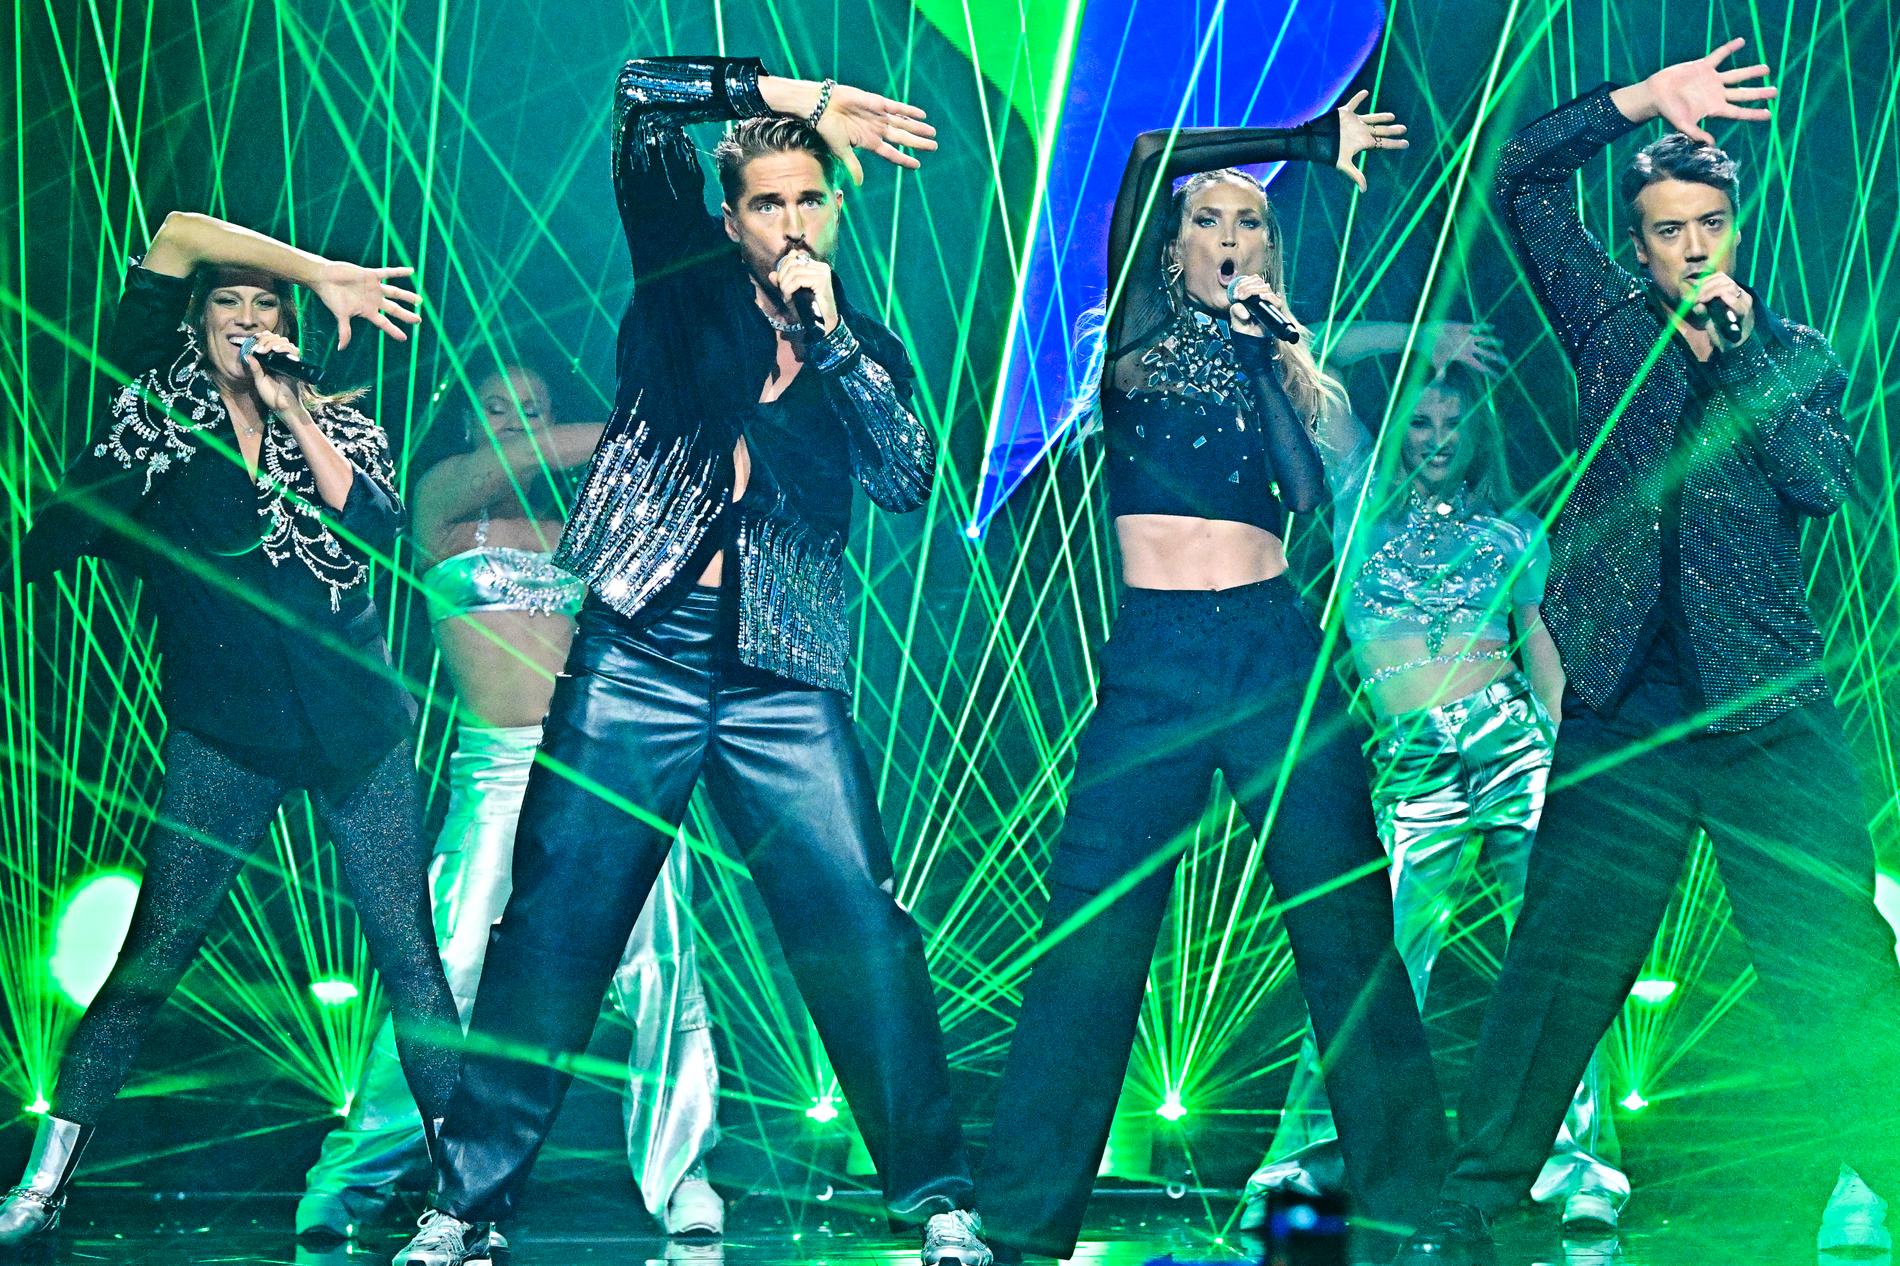 A-teens uppträdde som mellanakt under den första deltävlingen av Melodifestivalen.